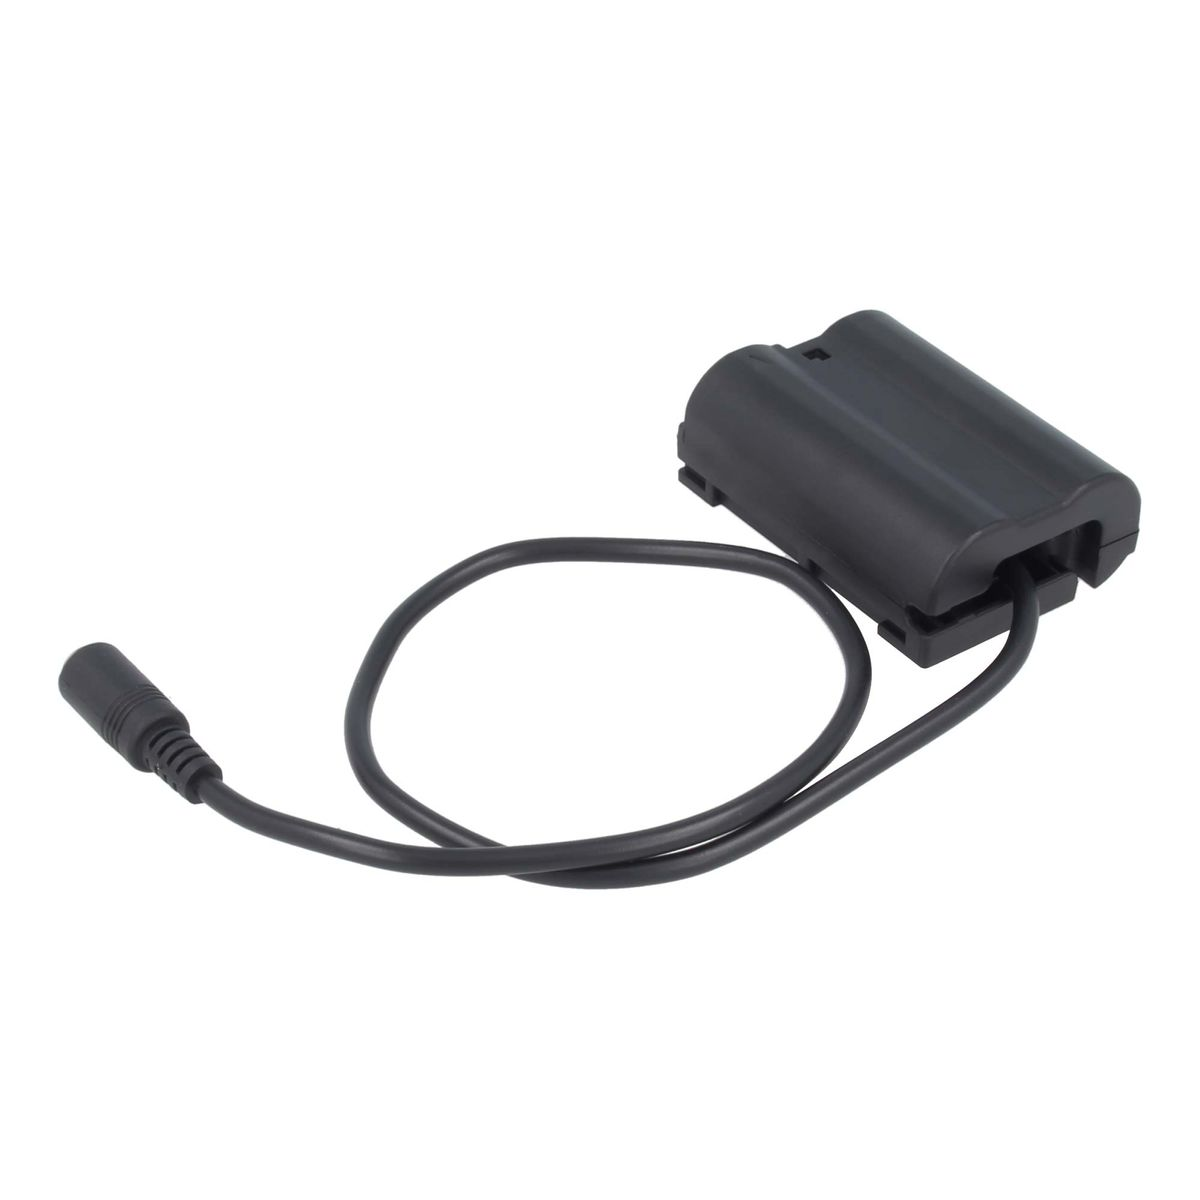 AKKU-KING USB-C Adapter + Kuppler Ladegerät Nikon, EP-5B keine kompatibel Angabe Nikon mit